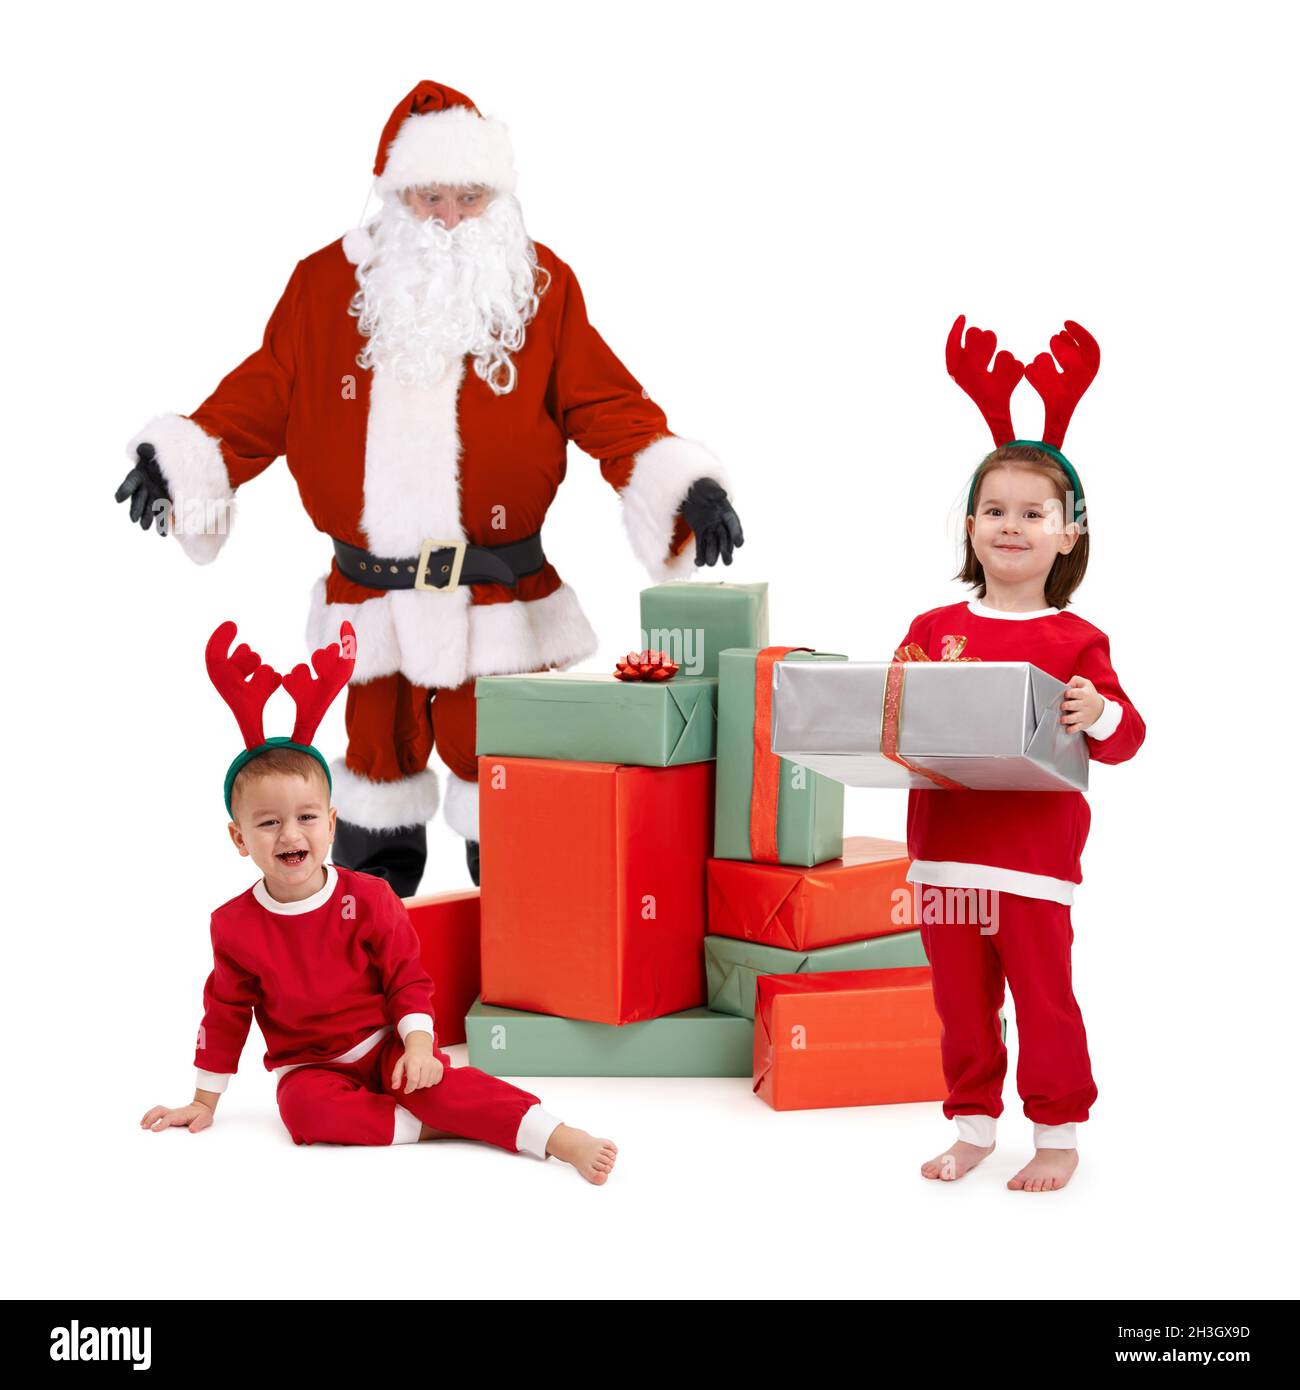 Weihnachtsmann mit glücklichen kleinen Kindern in Kostüm Stockfoto